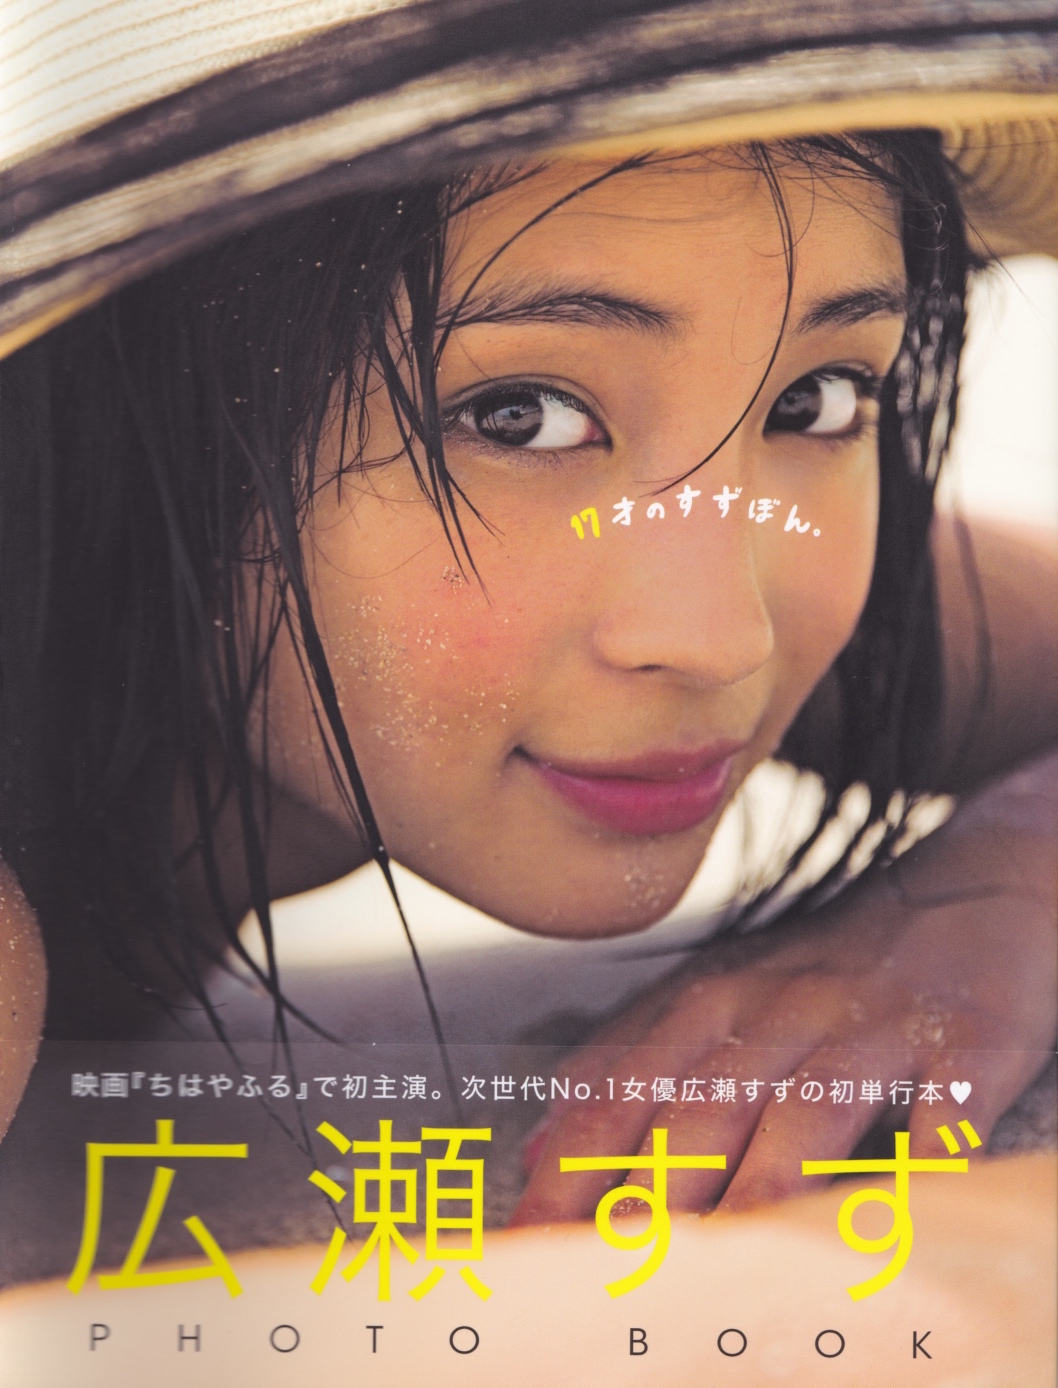 広瀬すずさん PHOTO BOOK「17歳のすず本」 | PRESS | BEAUTRIUM/ビュートリアム